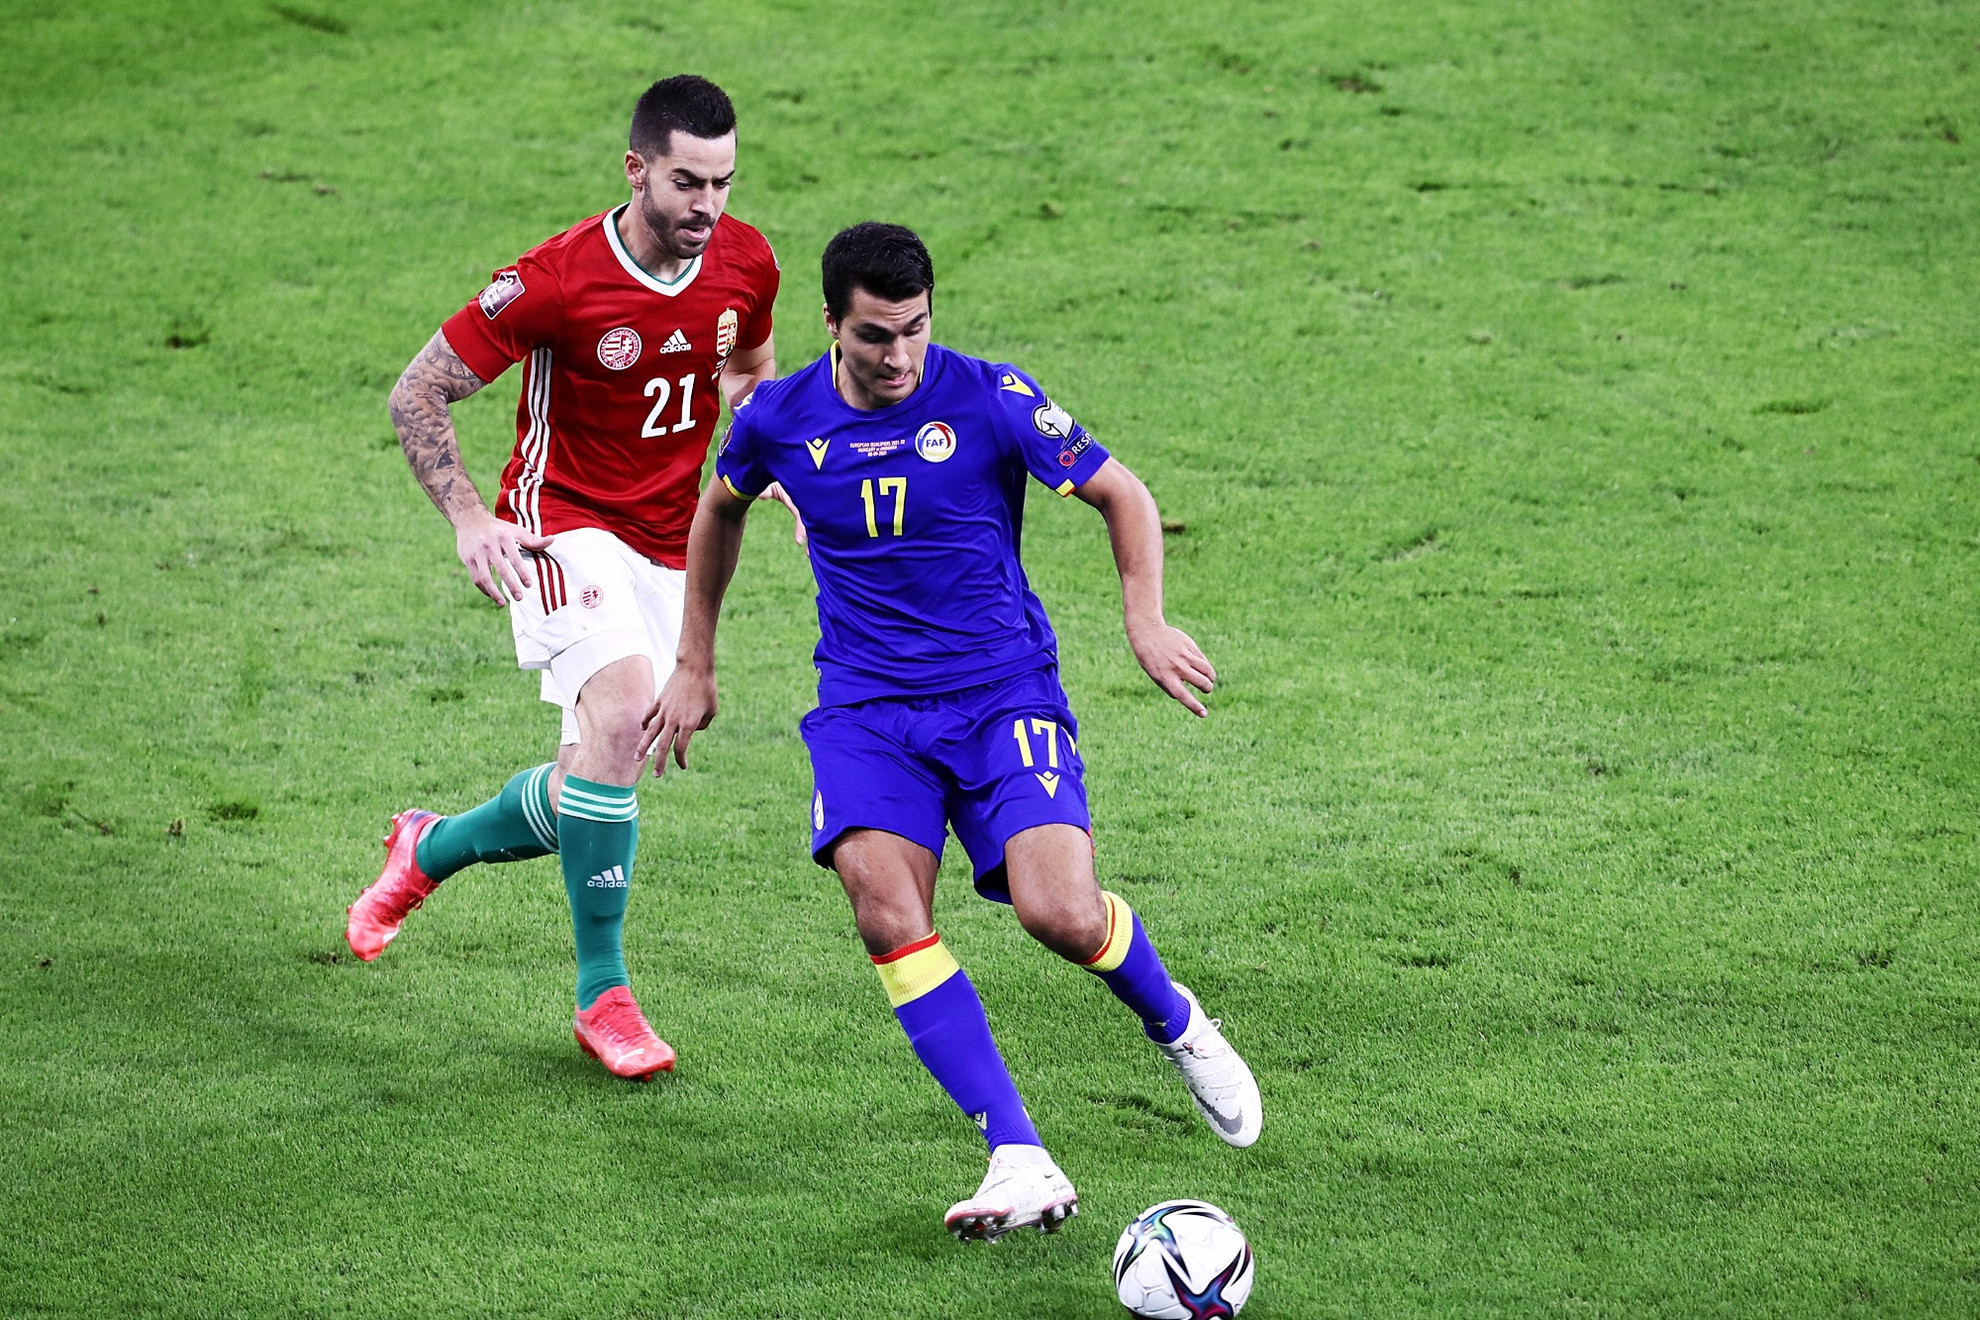 A magyar labdarúgó-válogatott 2-1-re legyőzte Andorrát a jövő évi katari világbajnokság európai selejtezősorozatának hatodik fordulójában